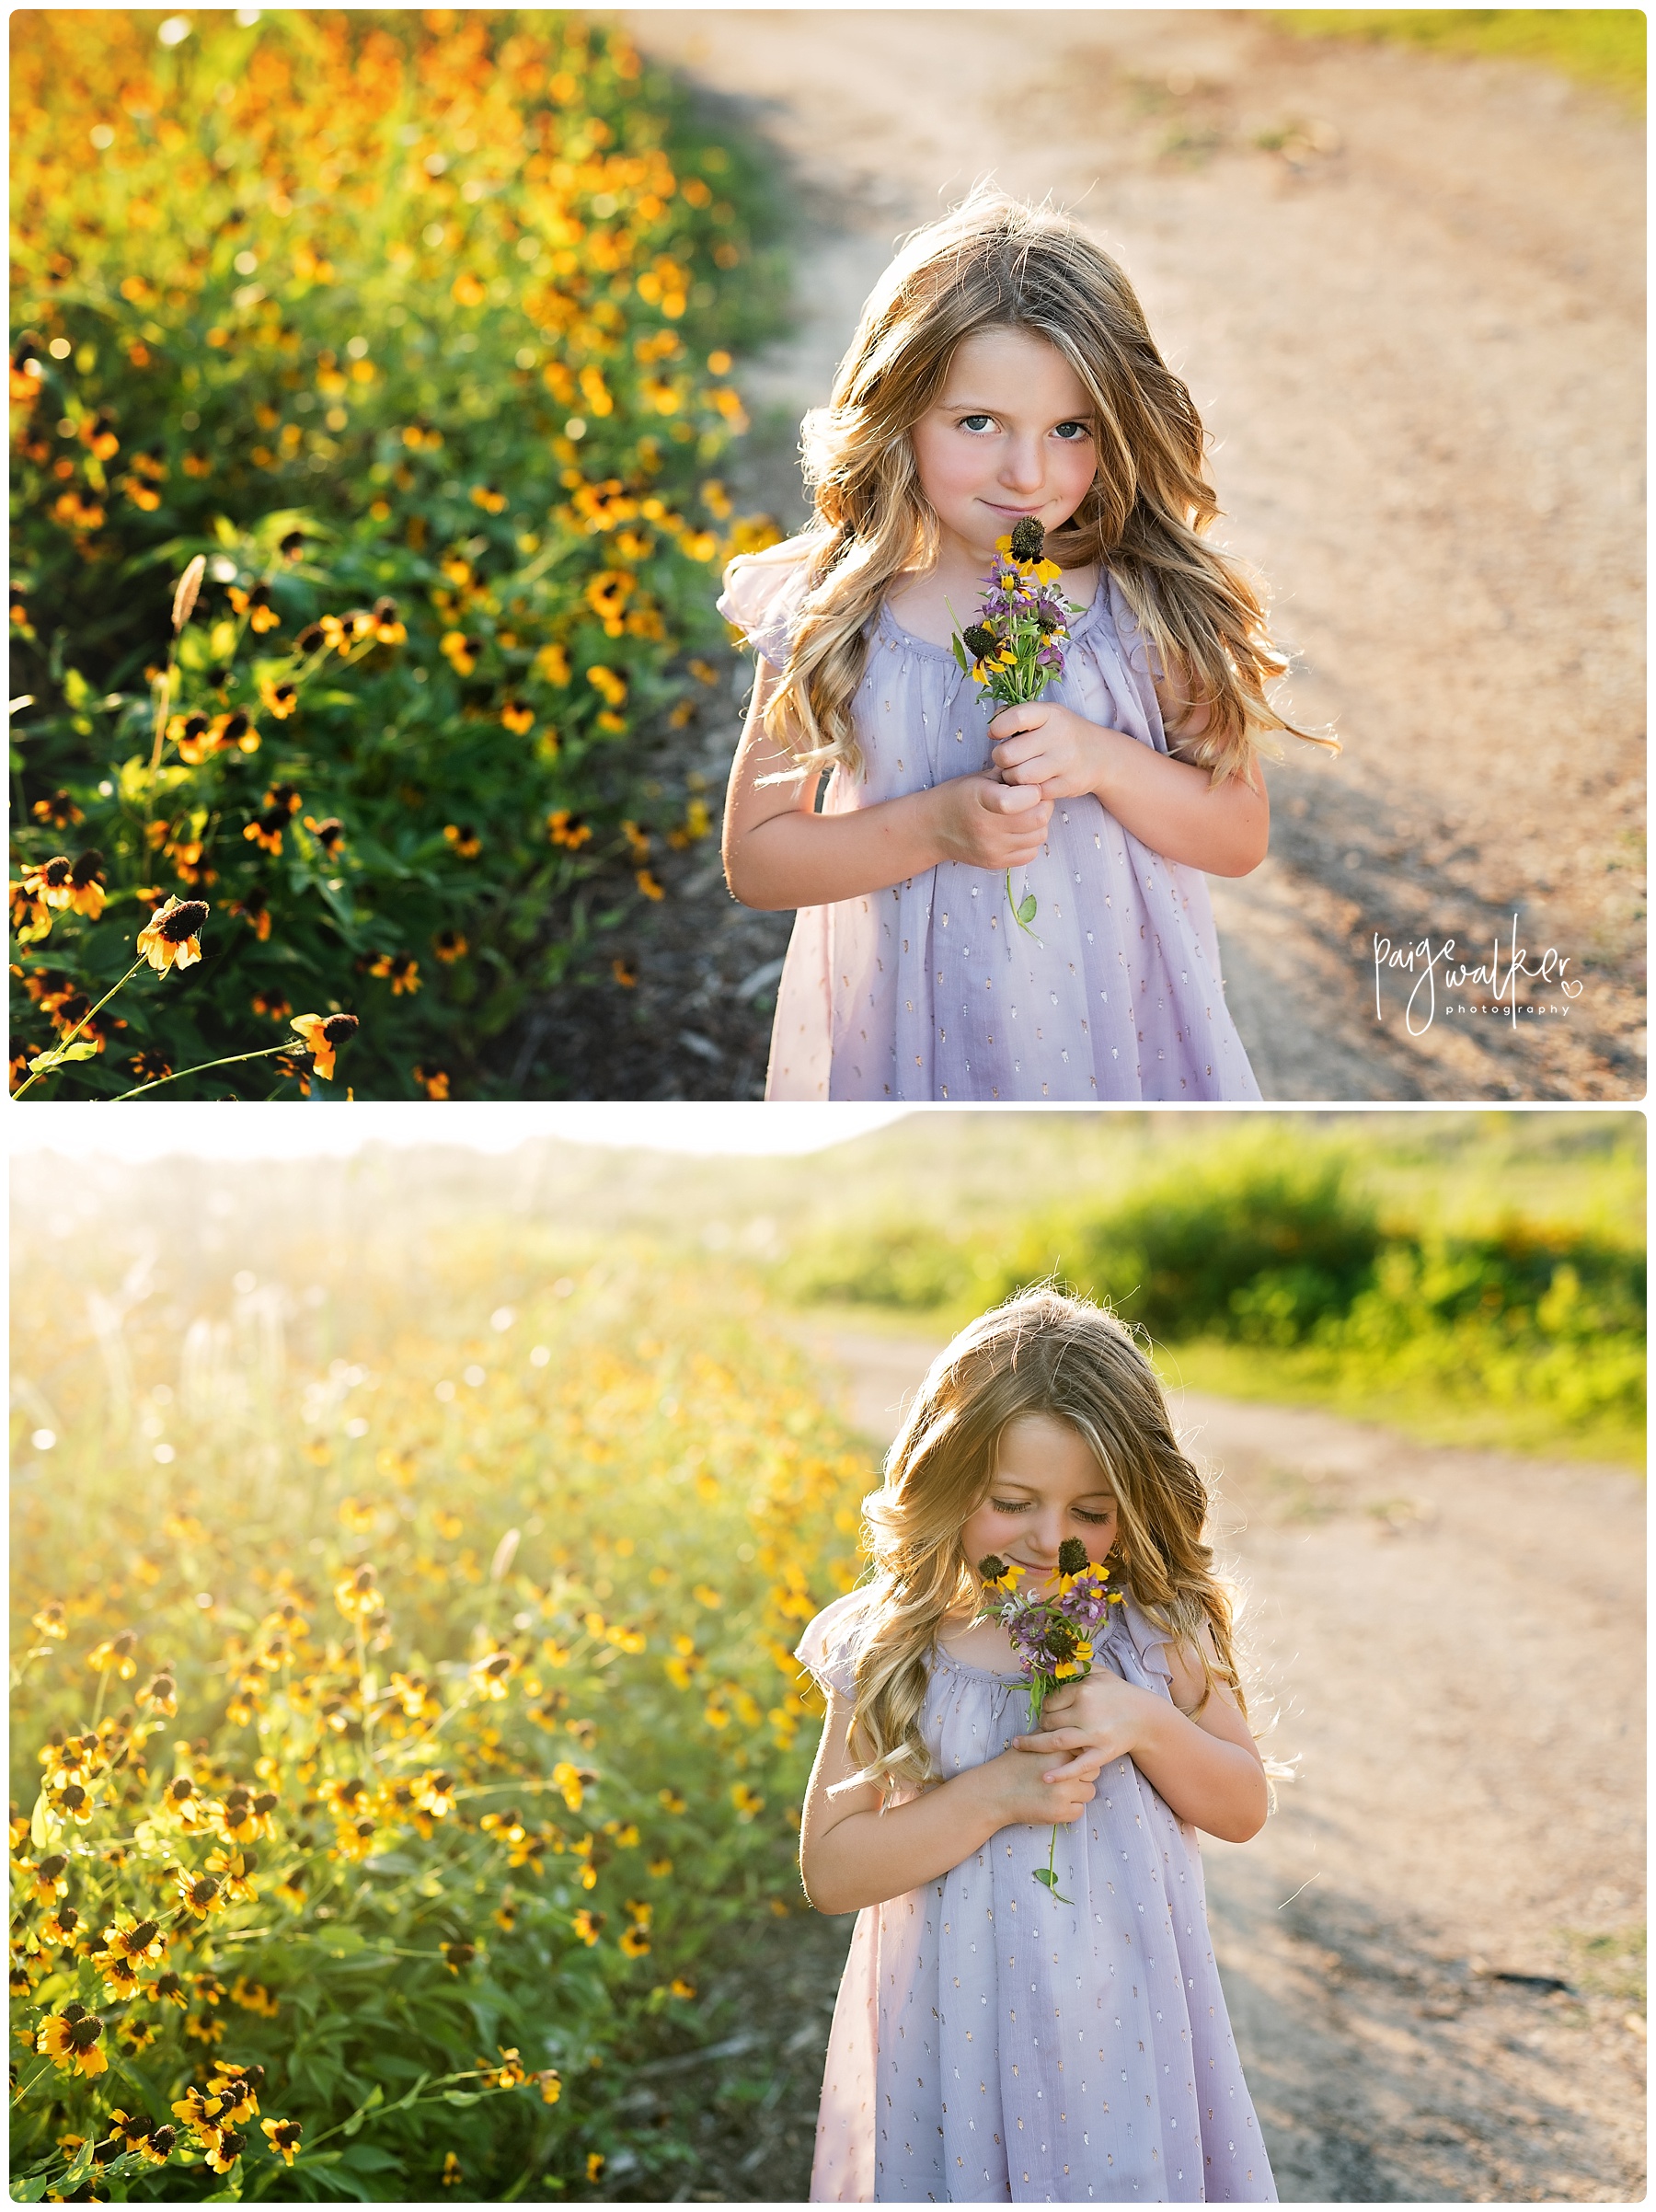 little girl smelling flowers